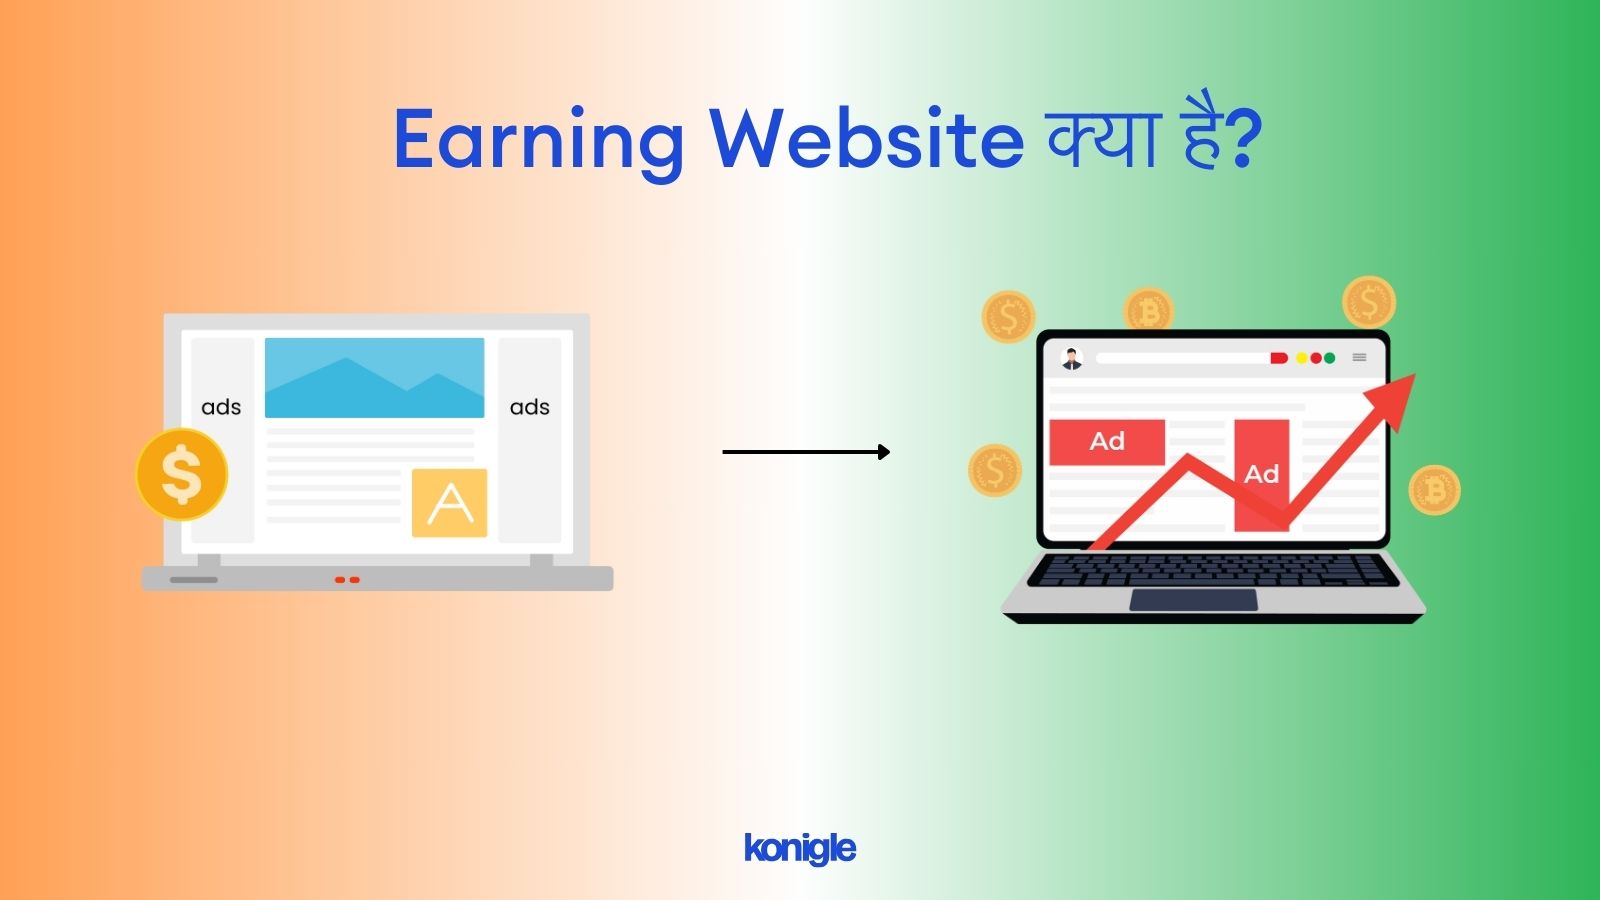 Earning website kya hai? - 5 ऑनलाइन कमाई कराने वाली वेबसाइट